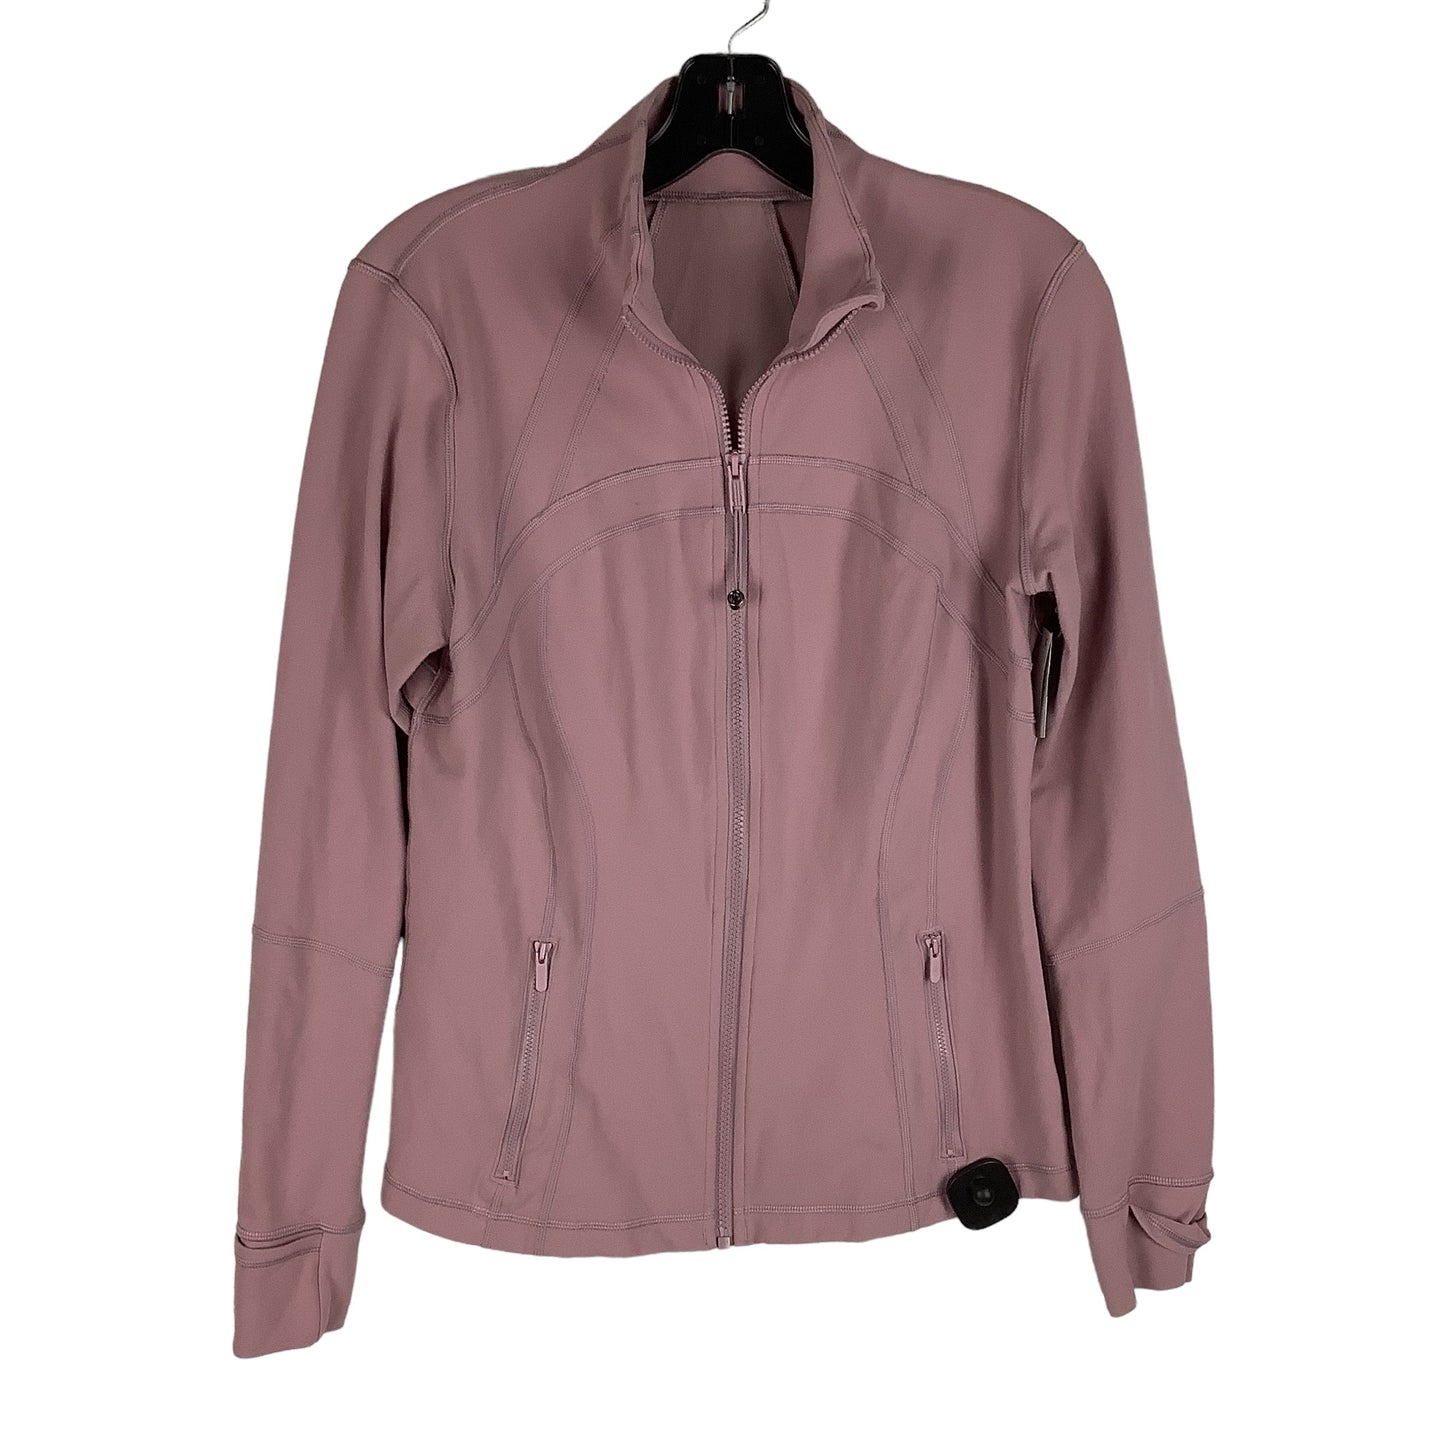 Pink Athletic Jacket Lululemon, Size 12